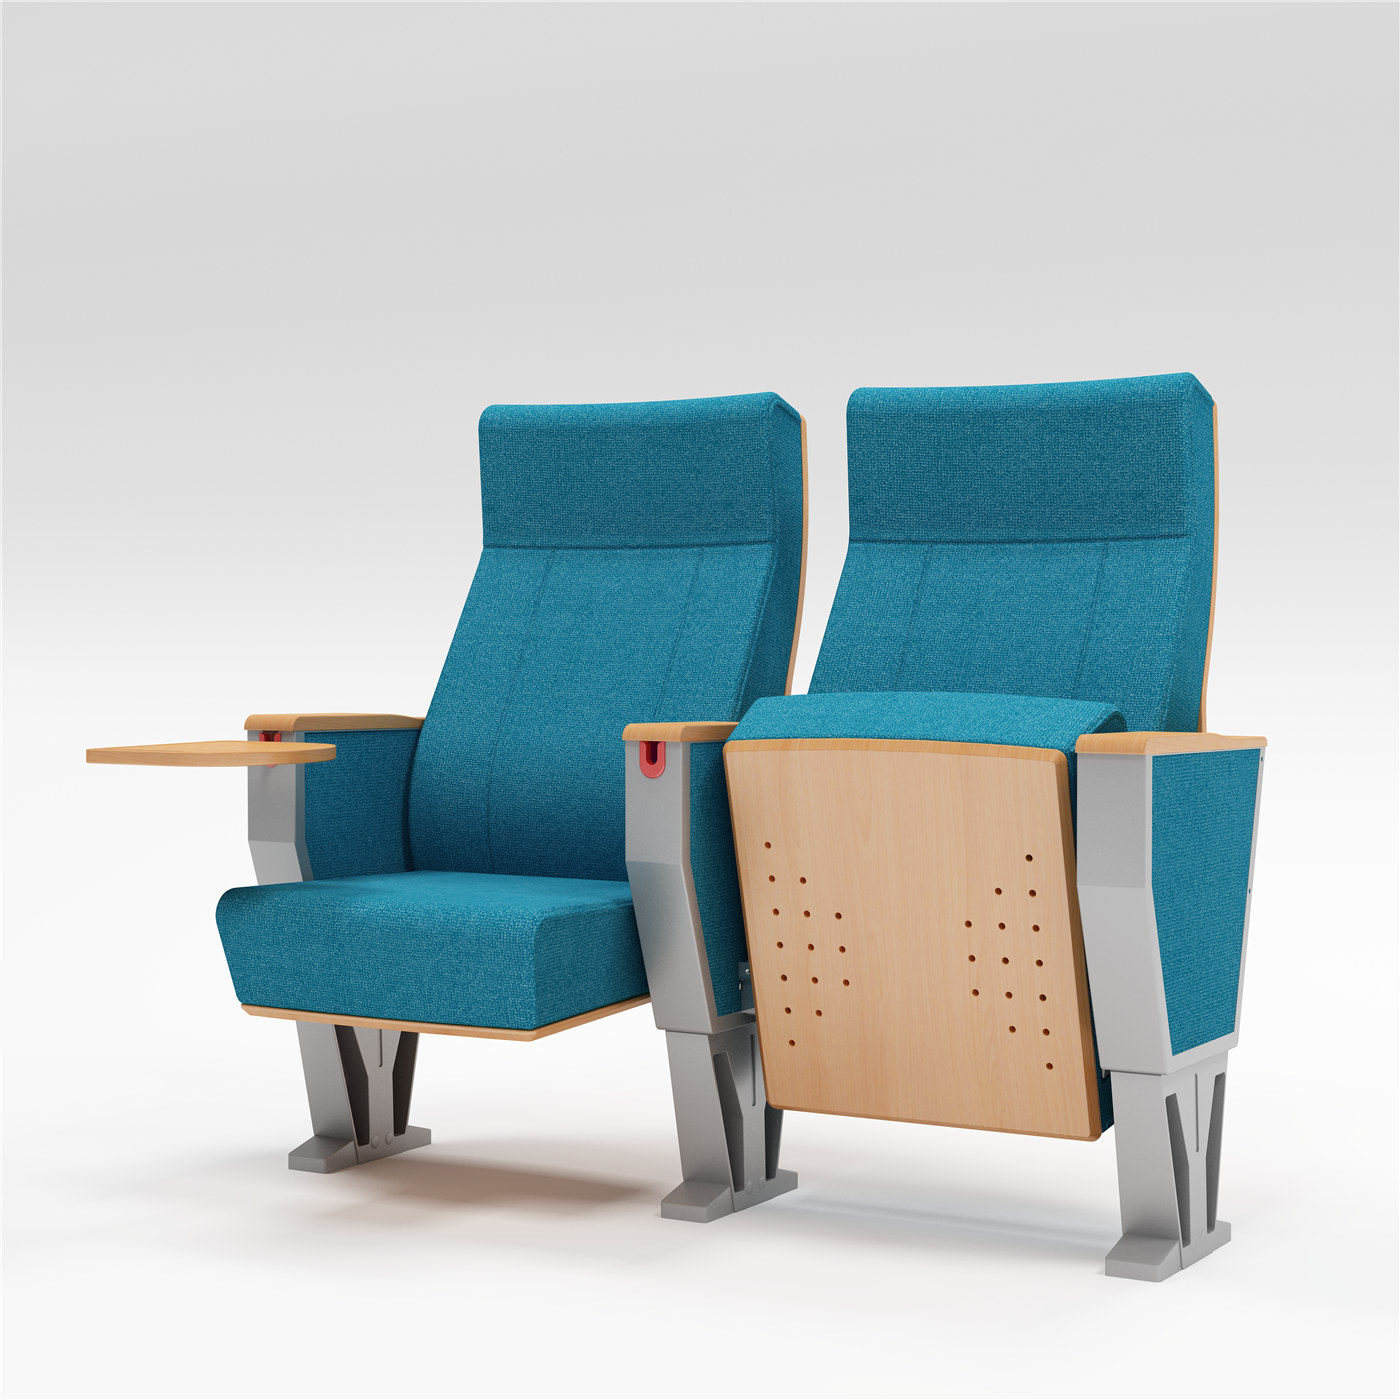 Đưa chỗ ngồi trong khán phòng của bạn lên một tầm cao mới với dòng ghế độc quyền của chúng tôi02